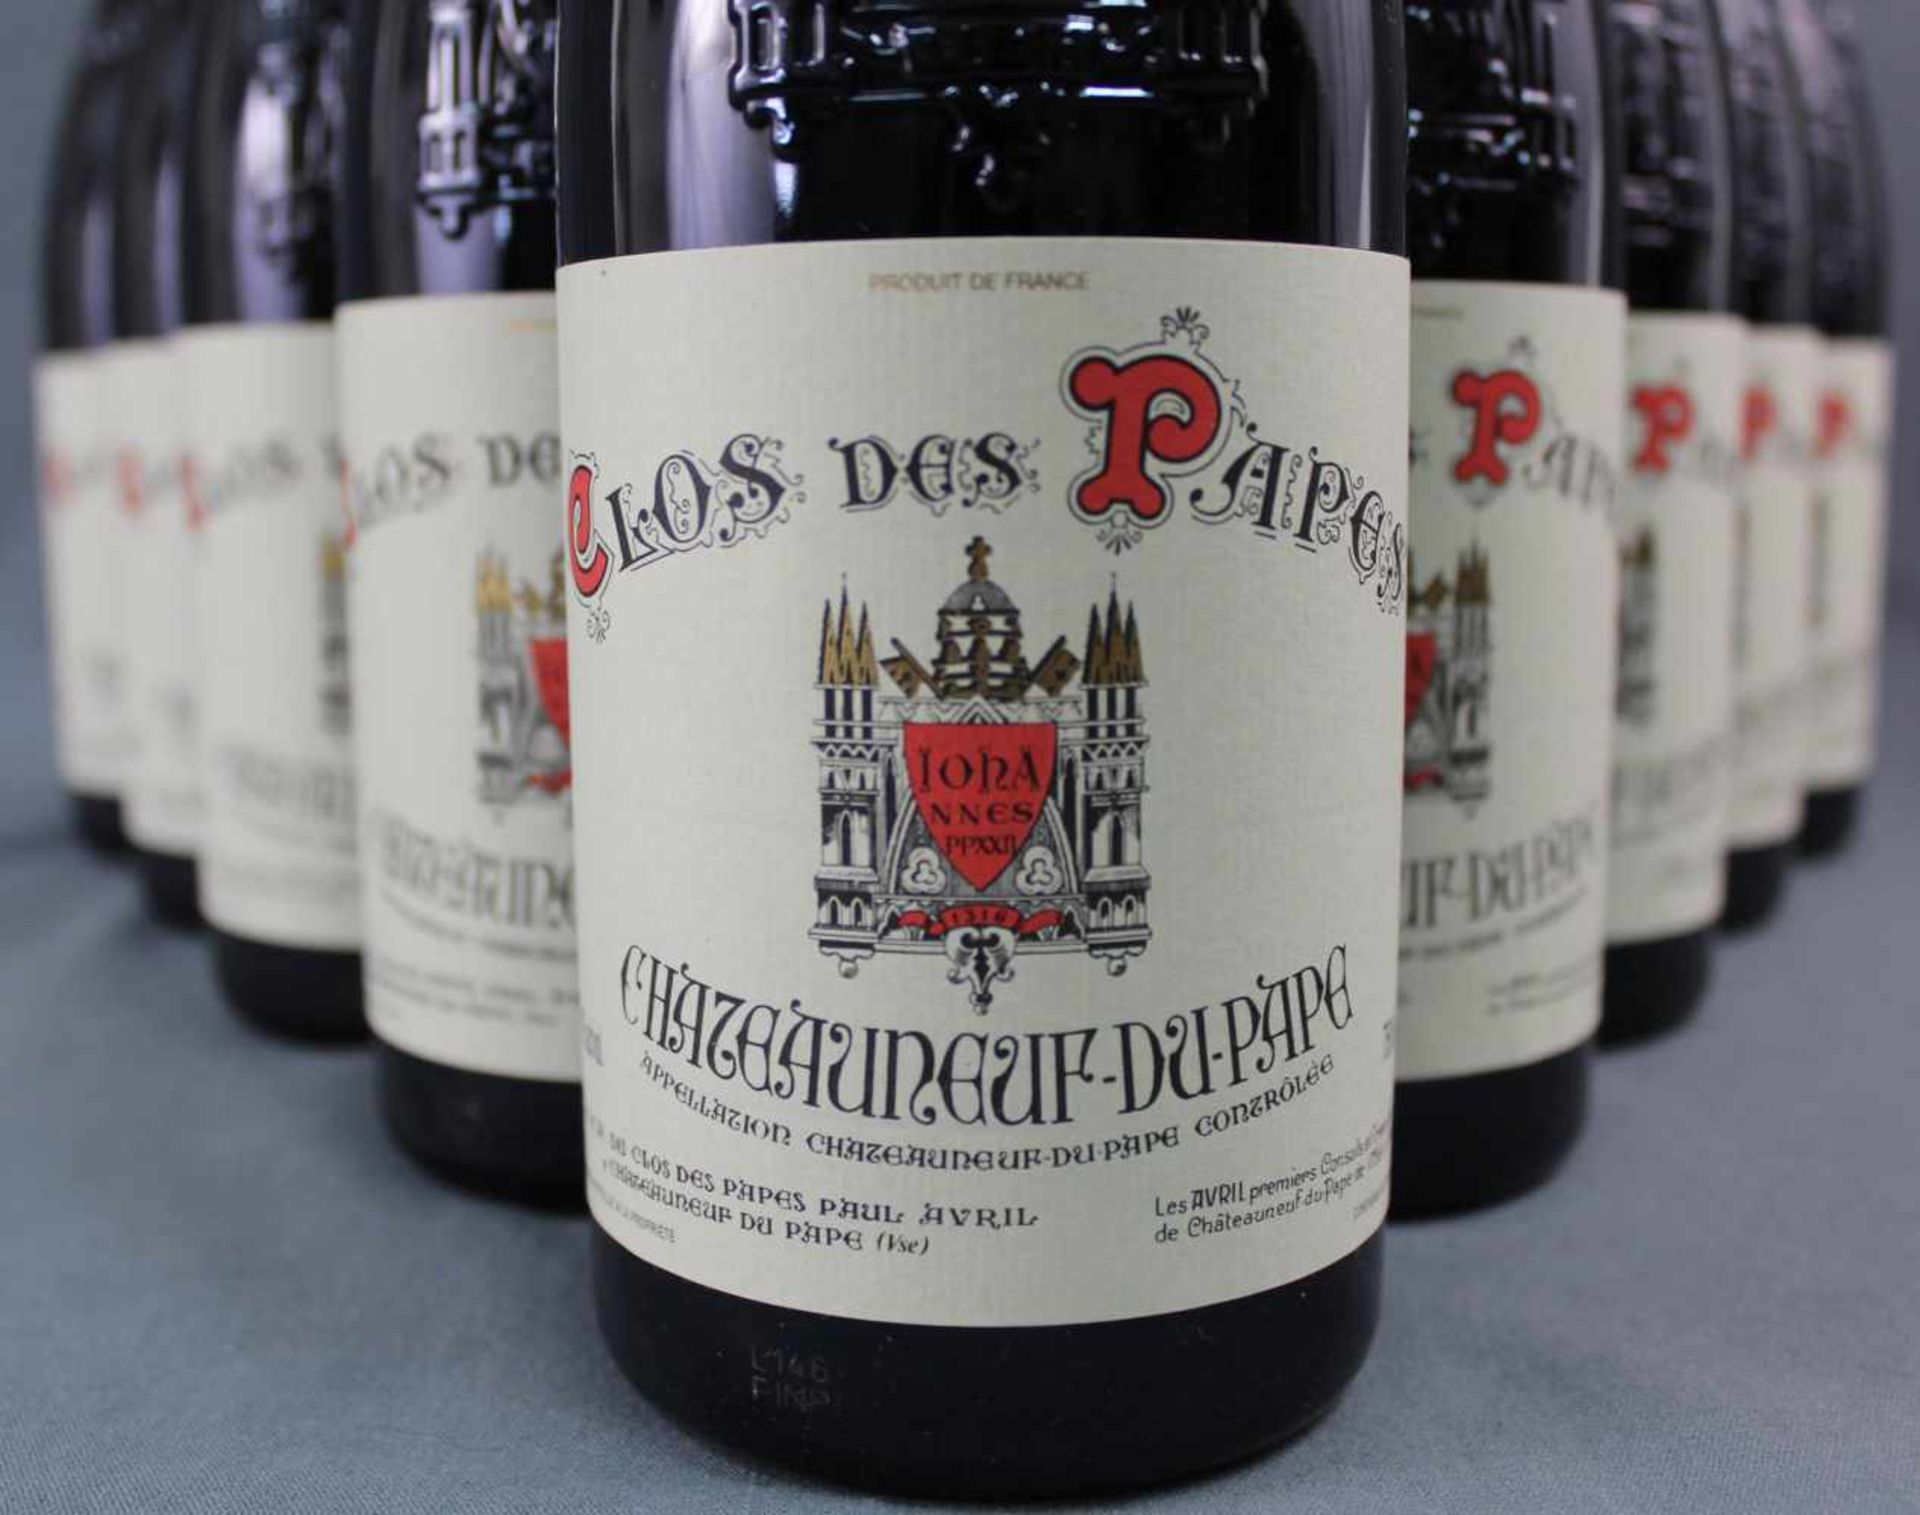 2014 Chateauneuf du Papes. "Clos des Papes". 14% Vol. 750 ml. 16 ganze Flaschen Rotwein - Bild 2 aus 6